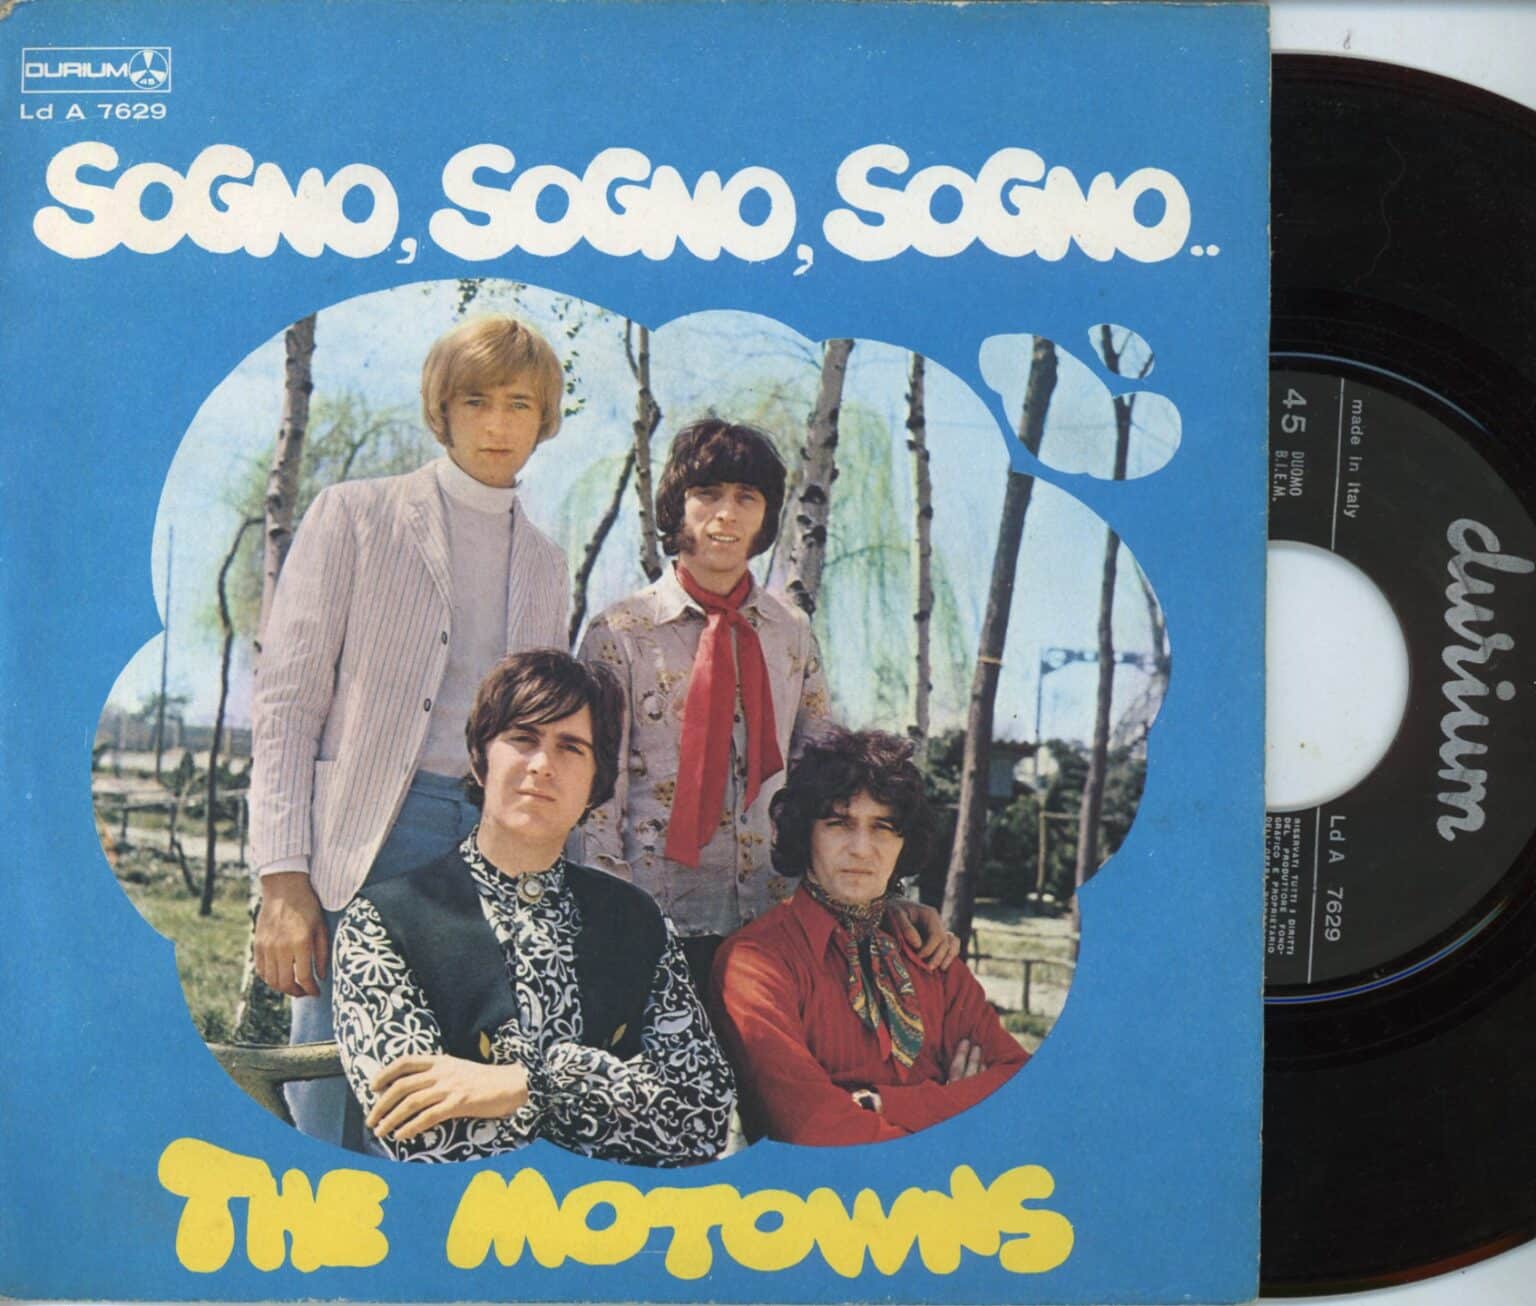 Vinile 45 giri – The Motowns: Sogno, Sogno, Sogno / Hello to Mary Hi-Fi e Vinili